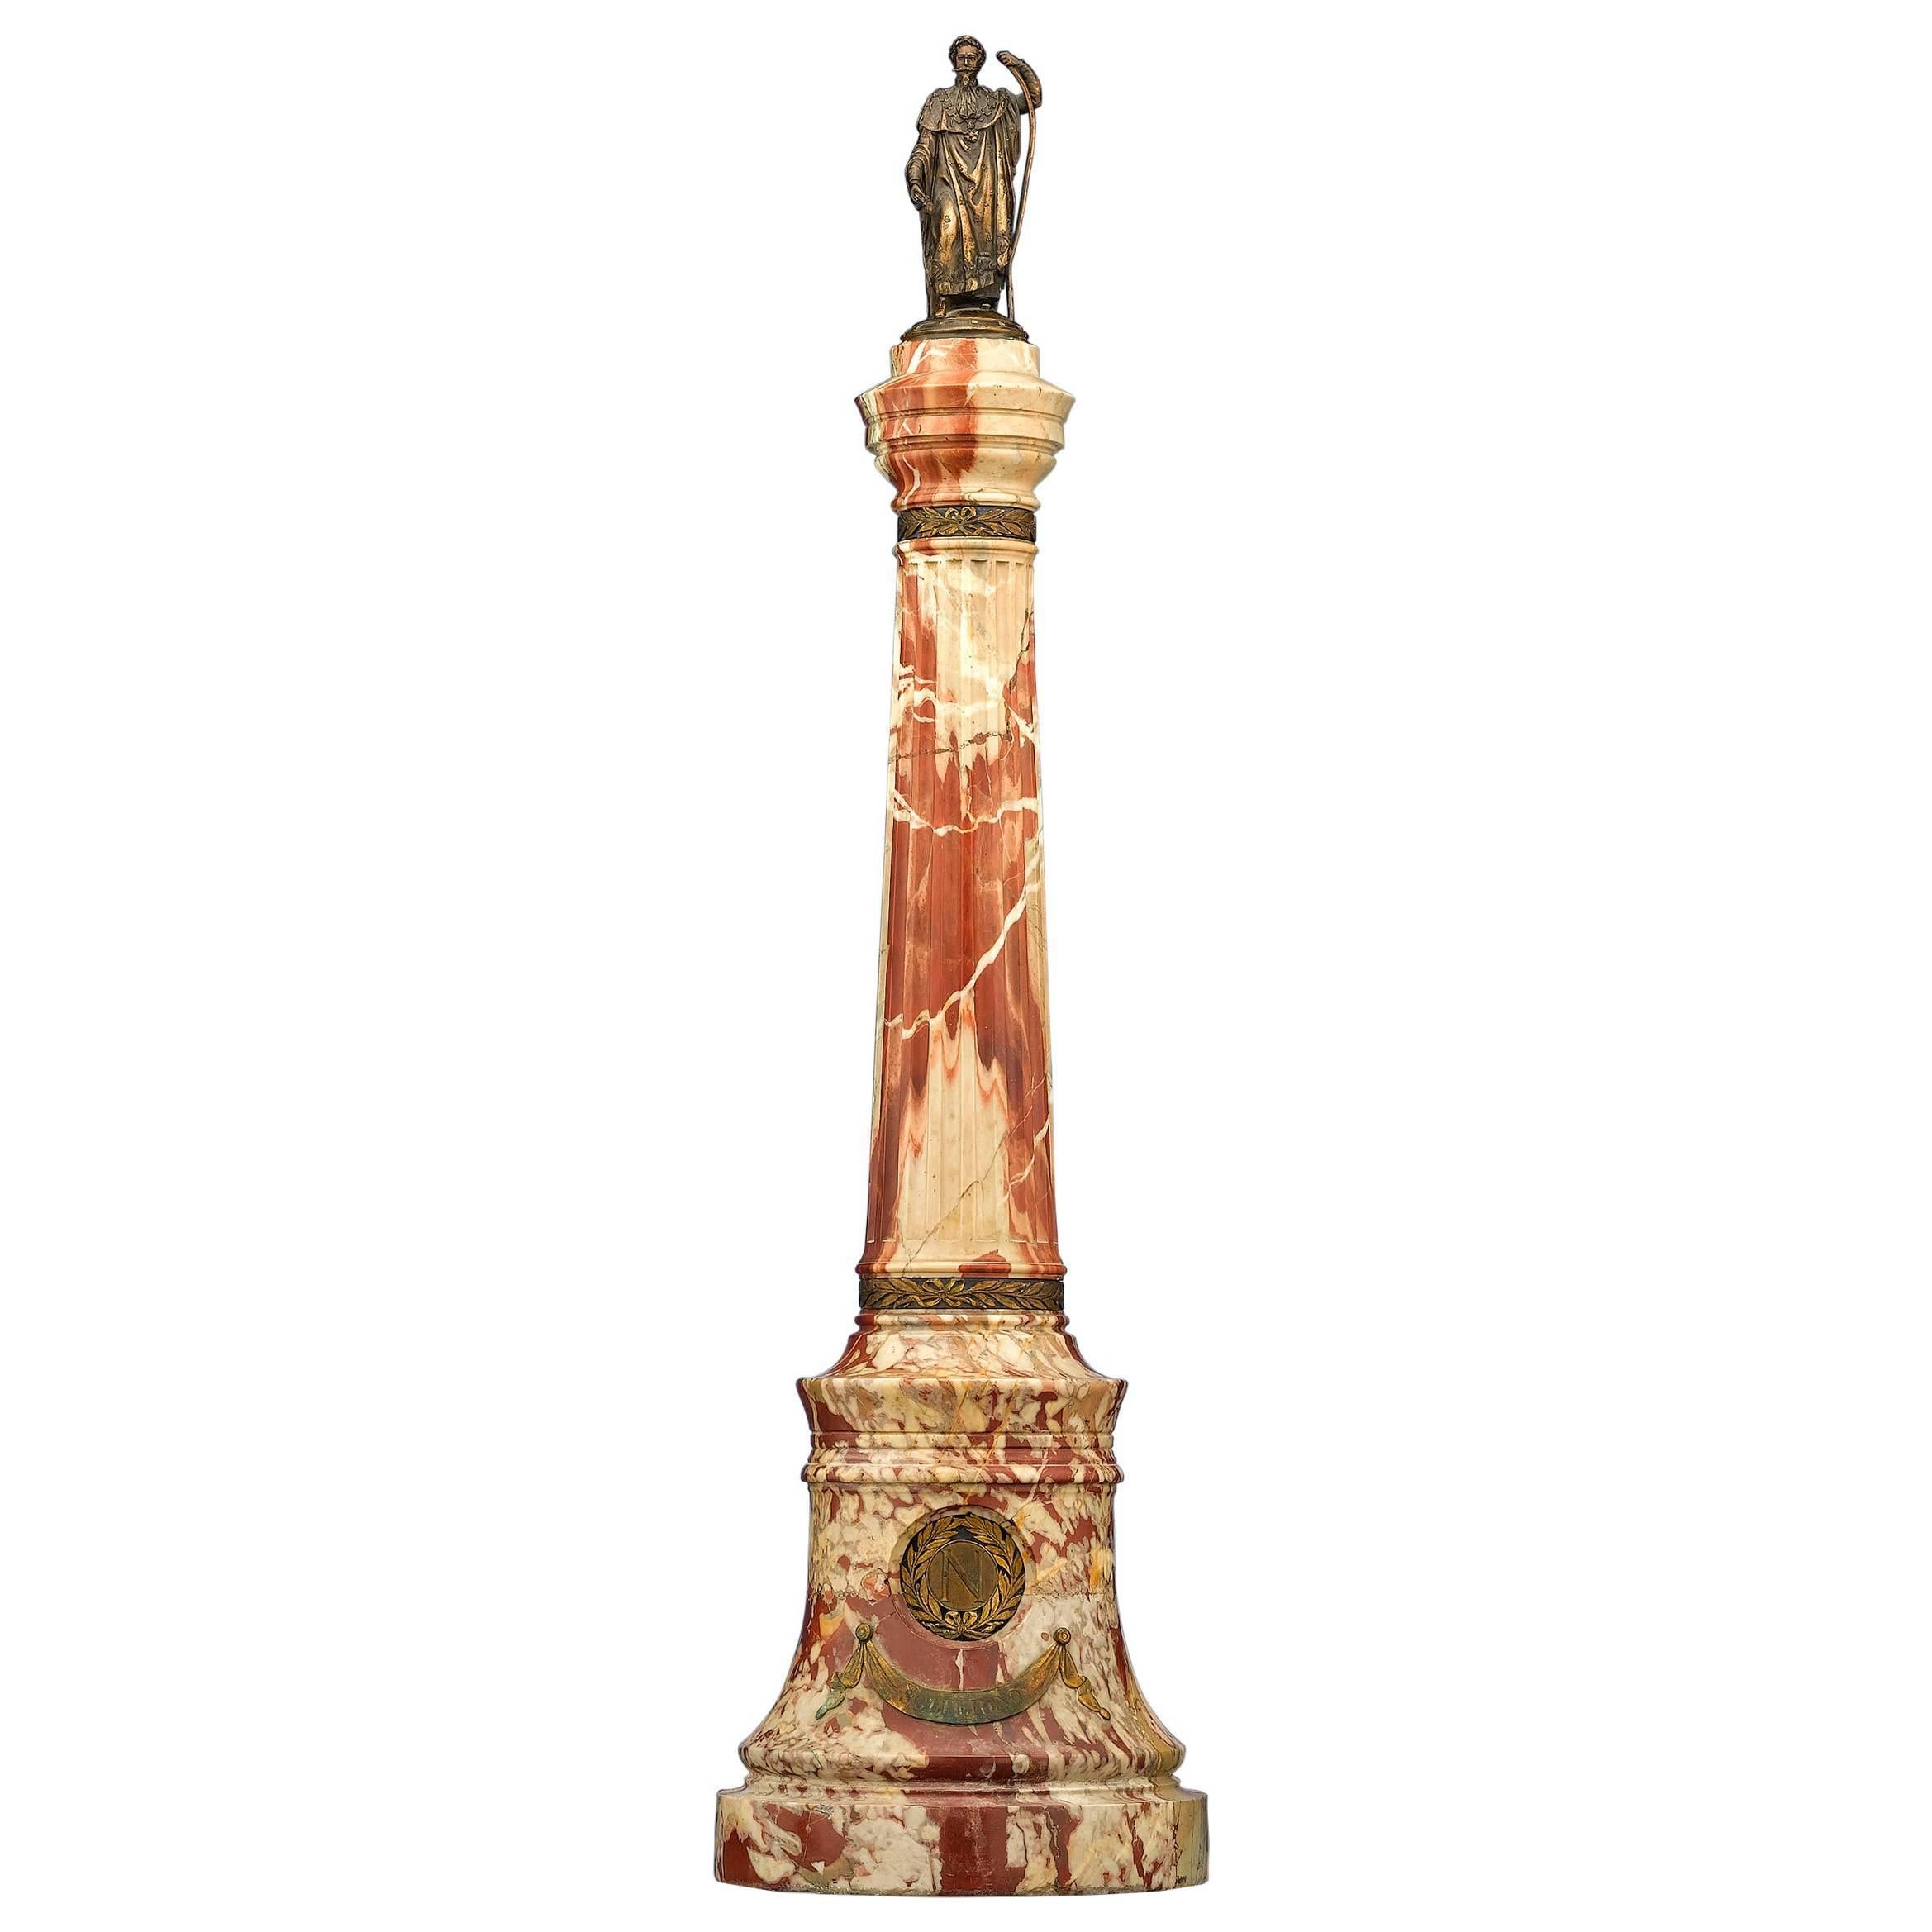 Napoleon III Marble and Bronze Column